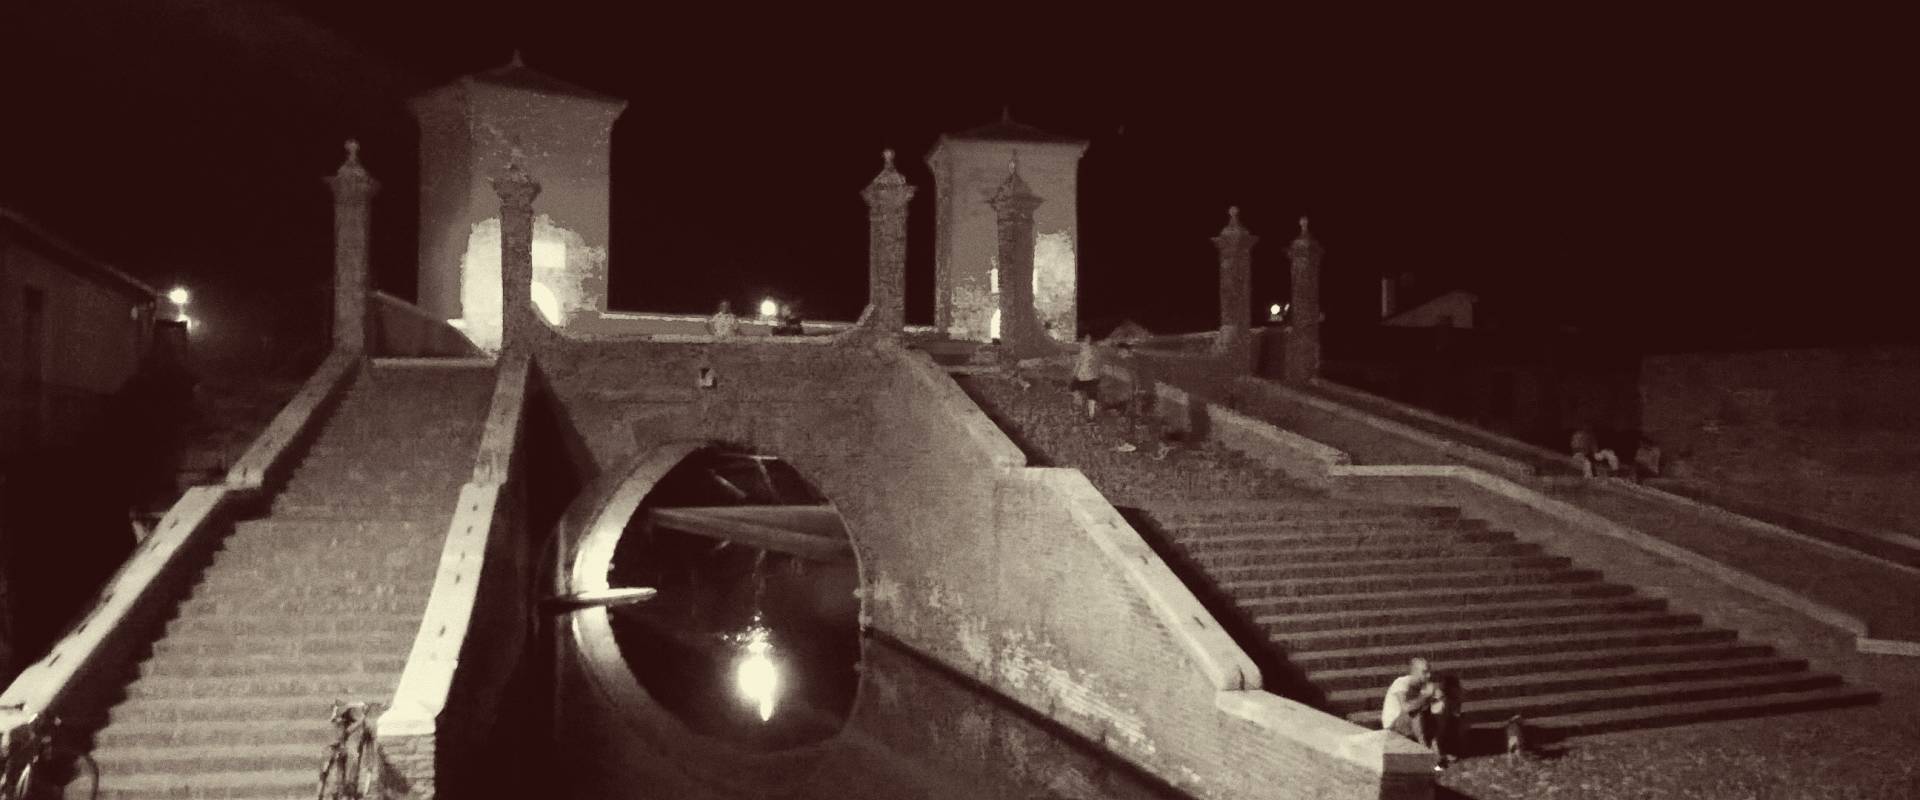 Ponte dei Trepponti - Comacchio - bn photo by Luca Nasi